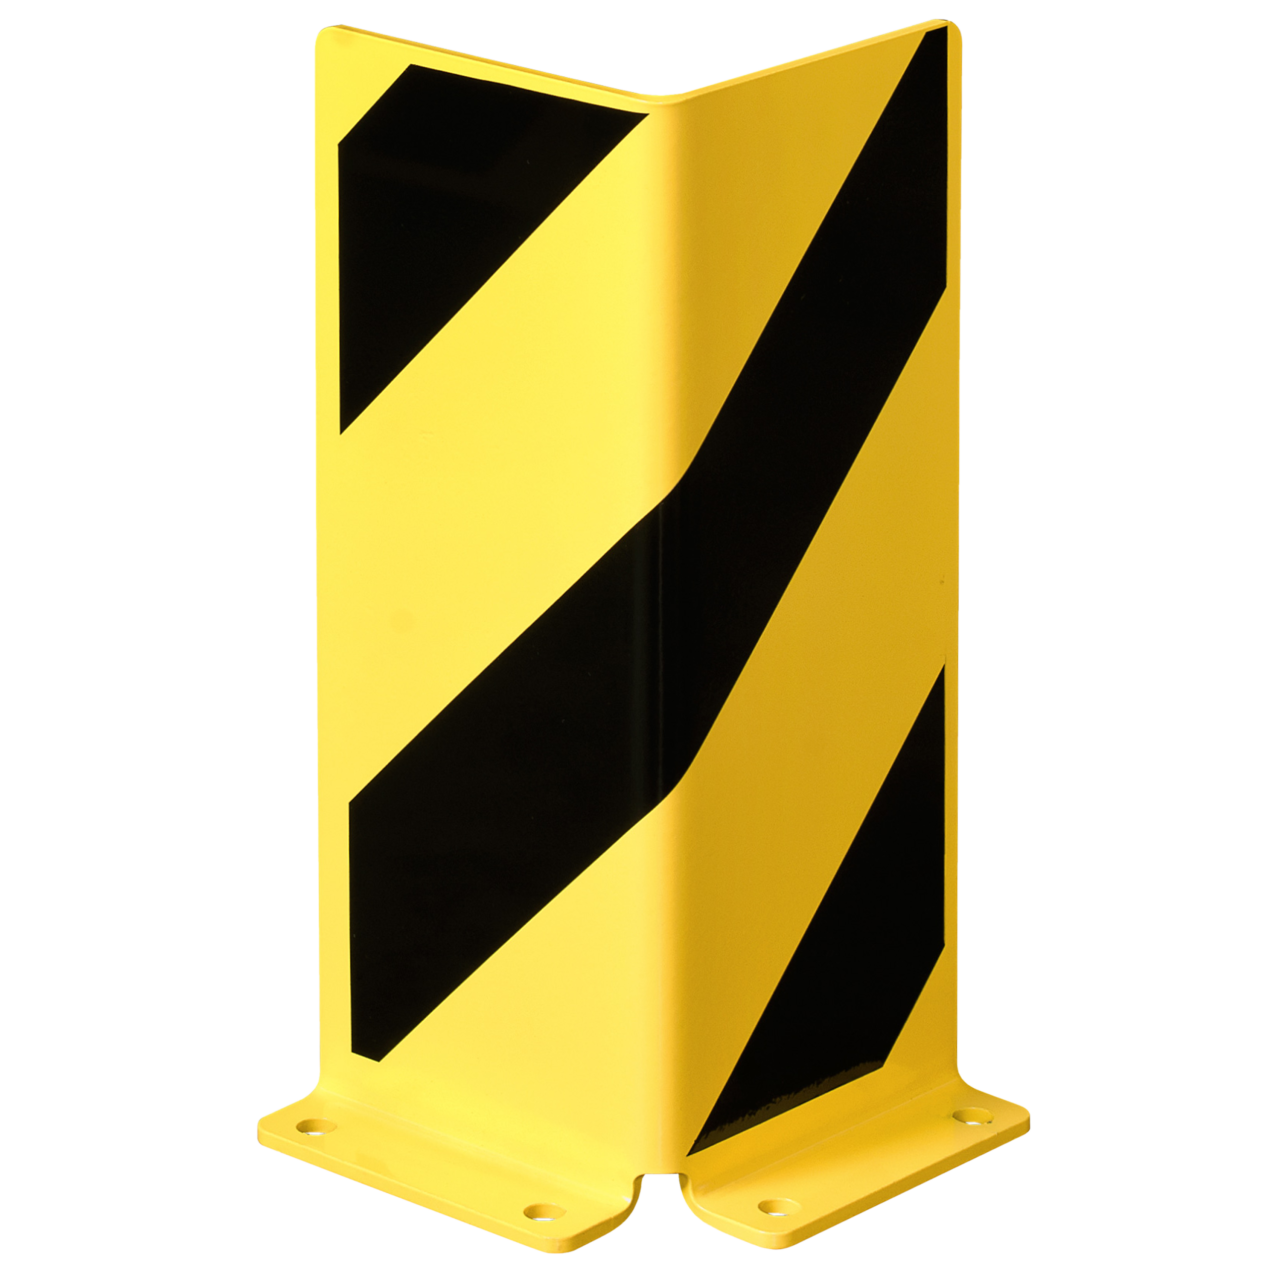 Anfahrschutz Winkel 40cm Höhe, gelb/schwarz